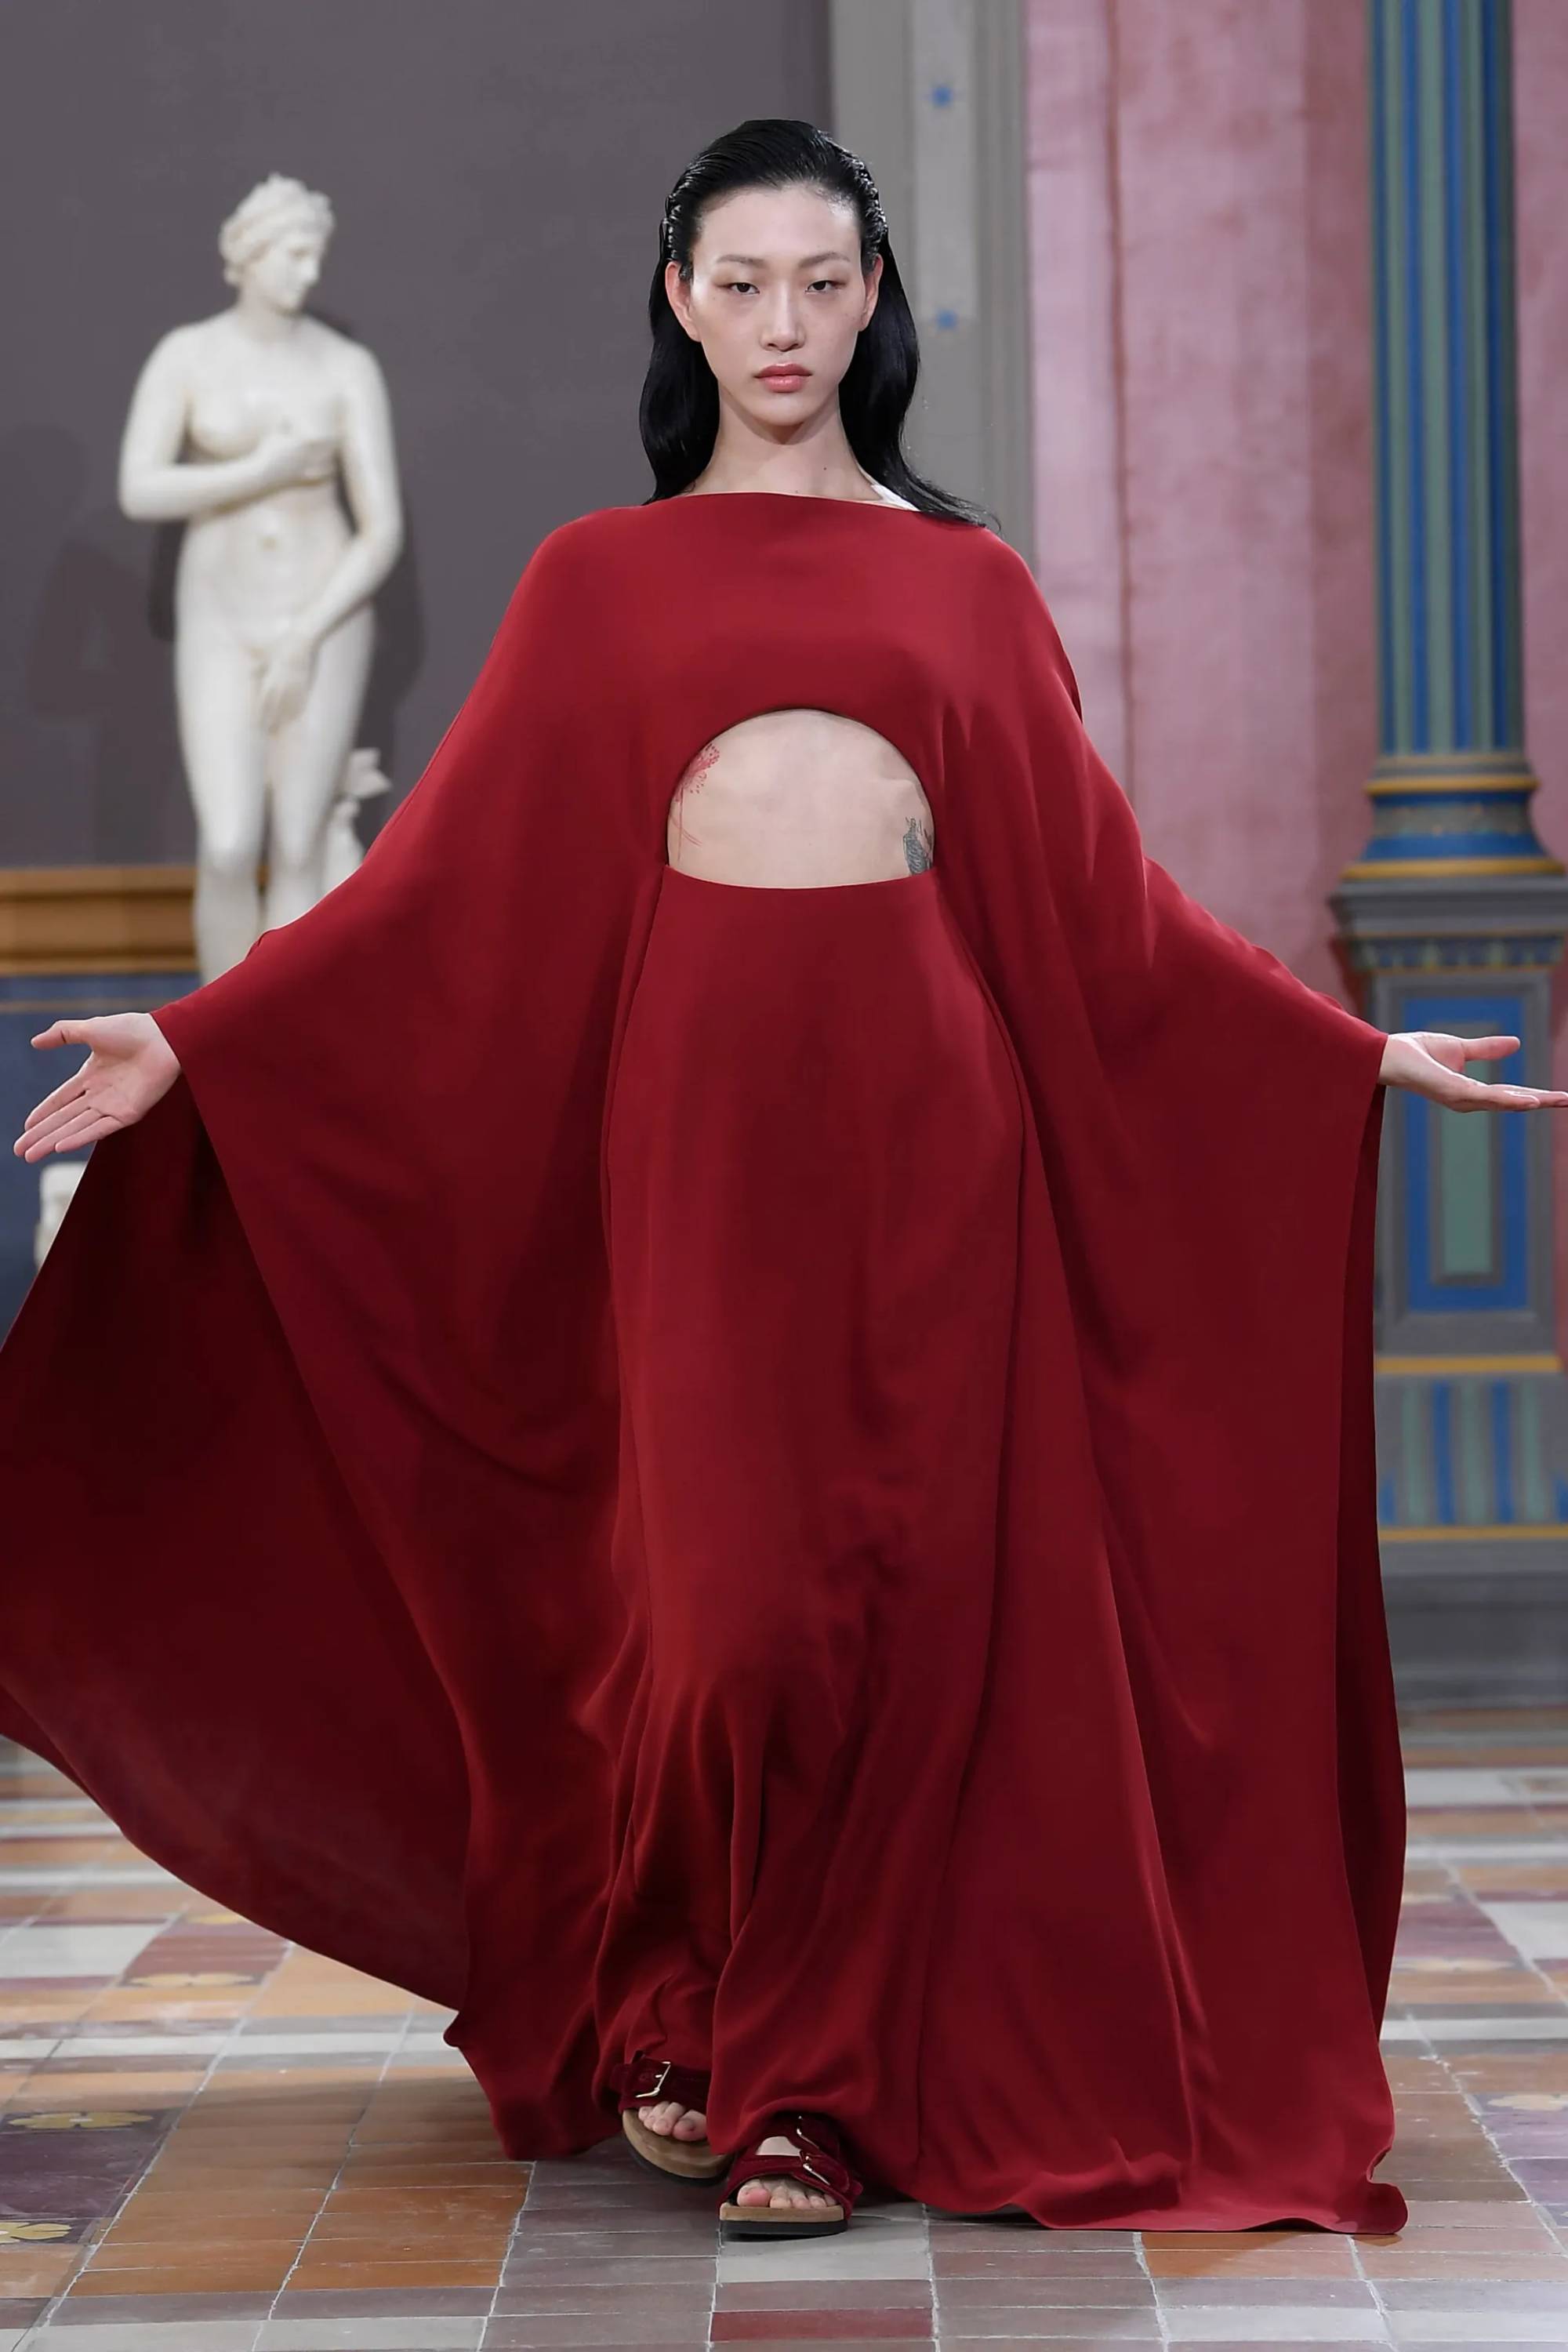 máxima de holanda es la reina latina más impactante con un vestido y zapatos pumps en rojo intenso